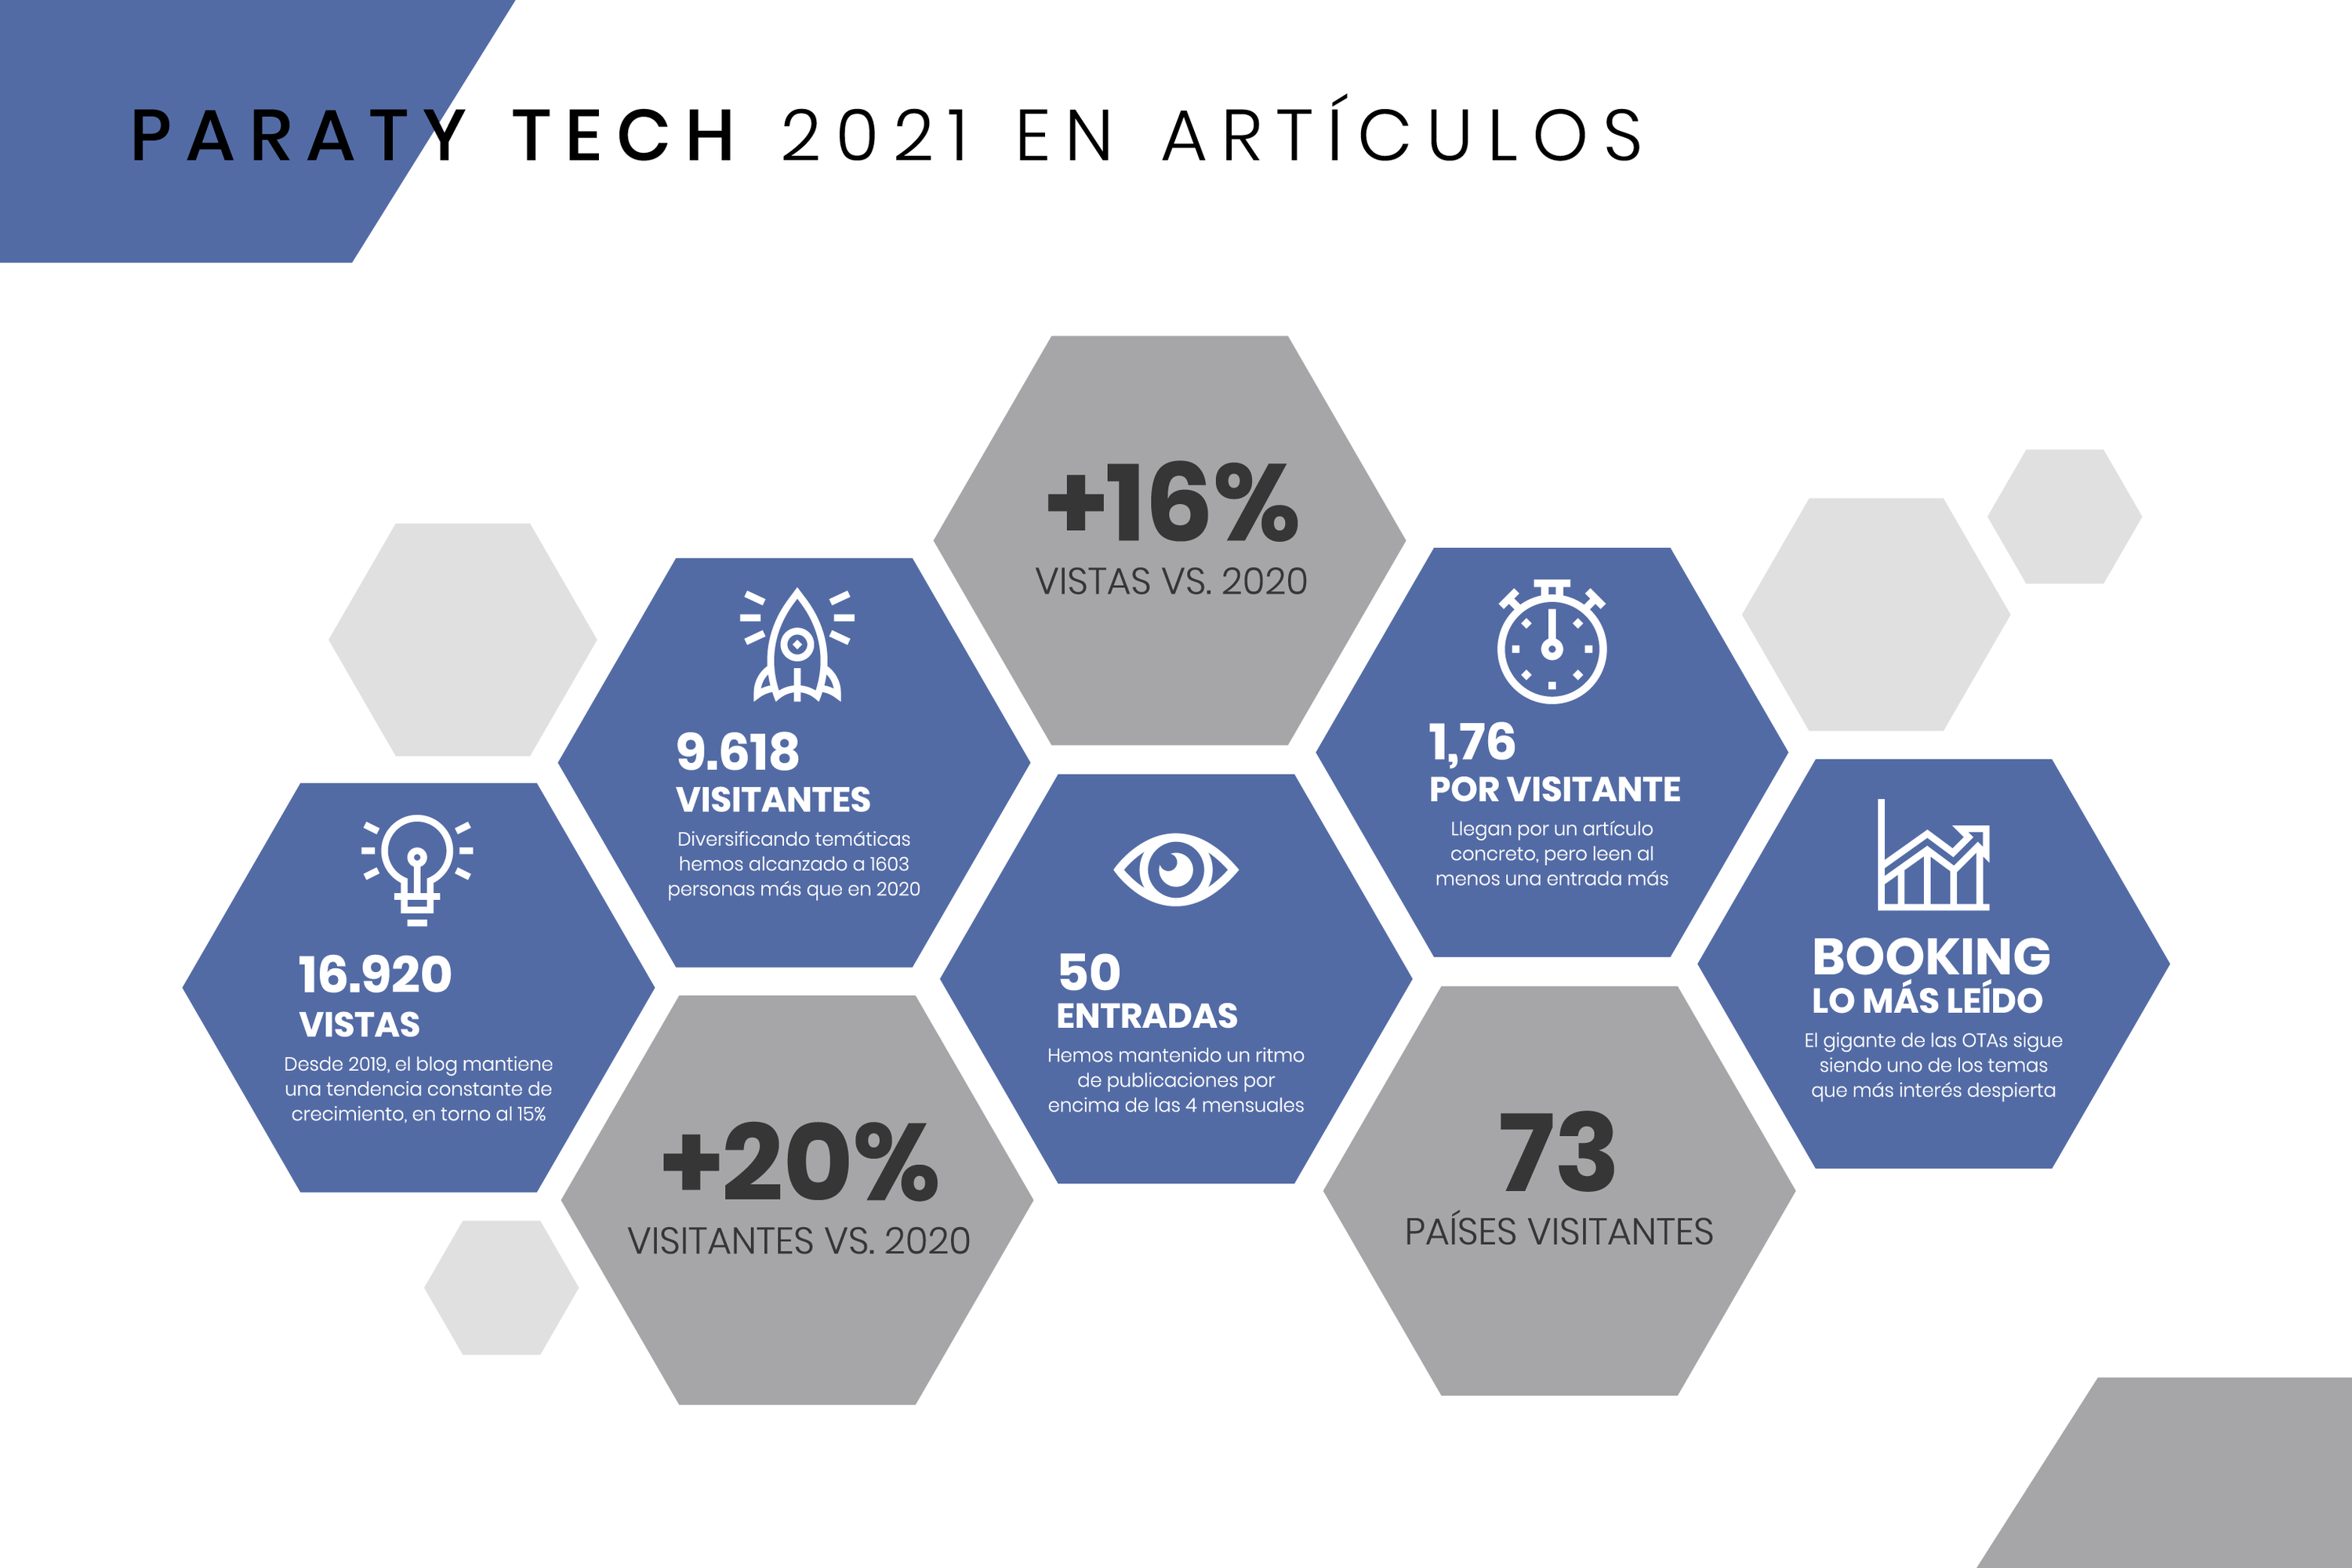 Paraty Tech in 2021